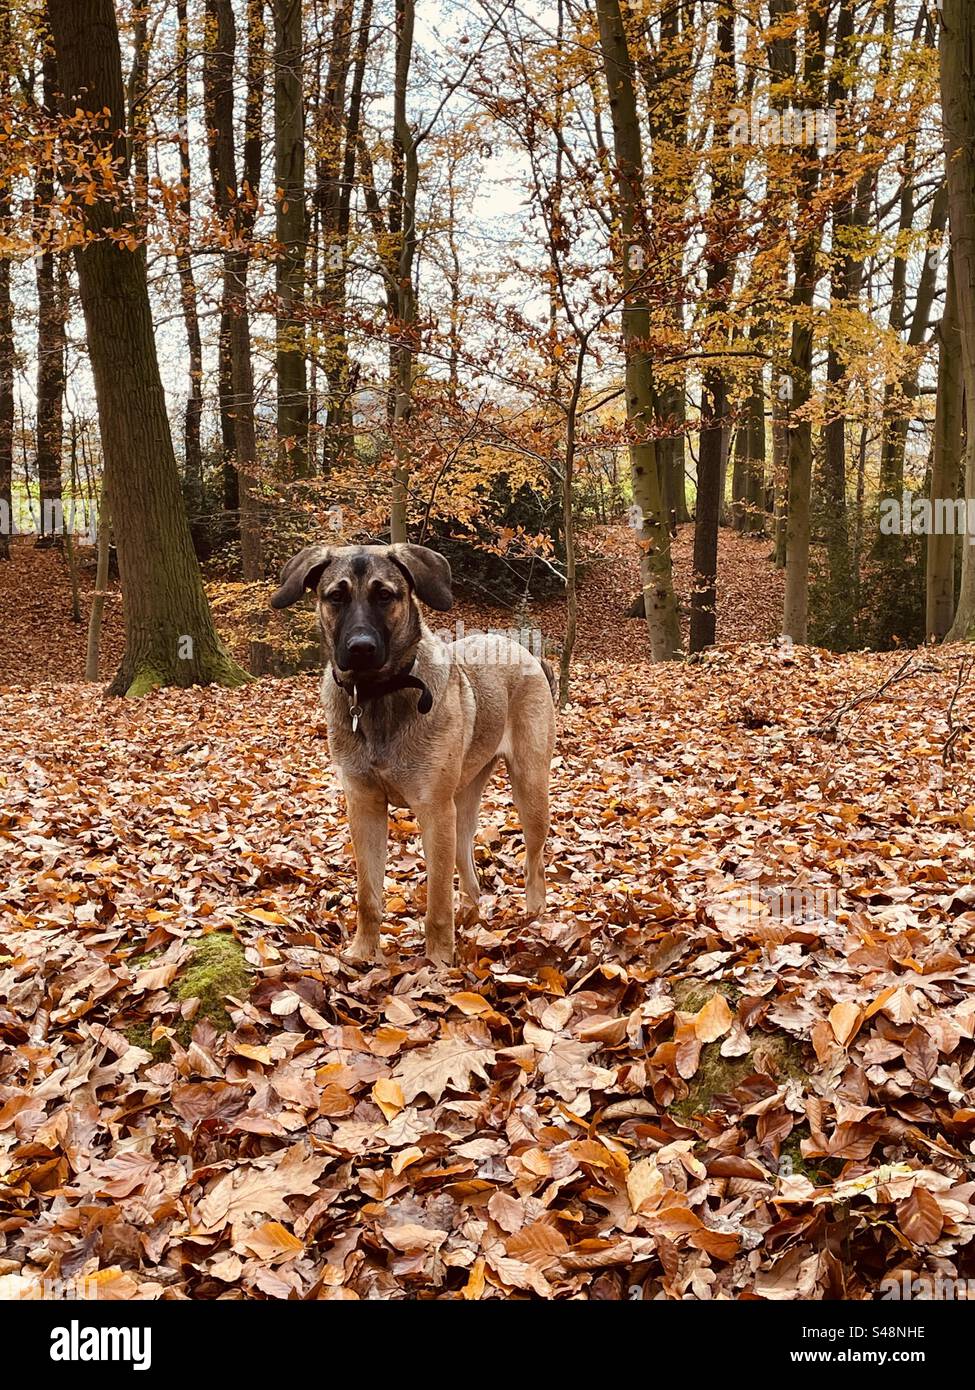 Hund, Schäferhund, Ridgeback, Wald, Herbst, Bäume, Laub, Herbstwald, bunte Blätter Autumn, Forest, Wood Stock Photo